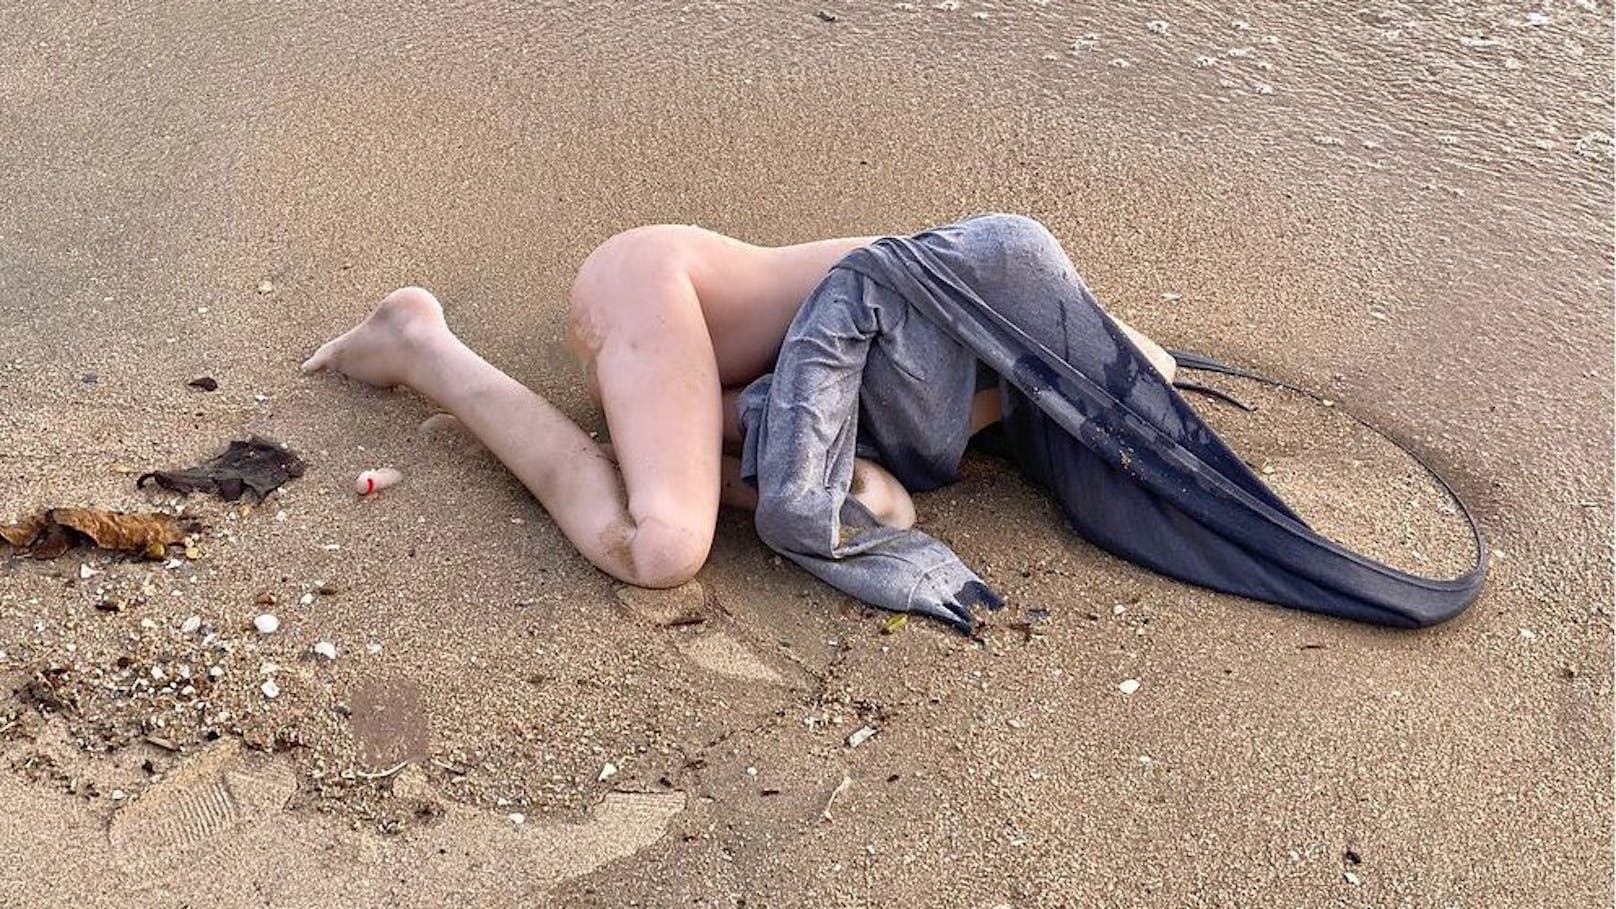 Strandbesucher hatten den "leblosen Körper" am Strand von Bang Saen in Thailand entdeckt und sofort die Polizei alarmiert.